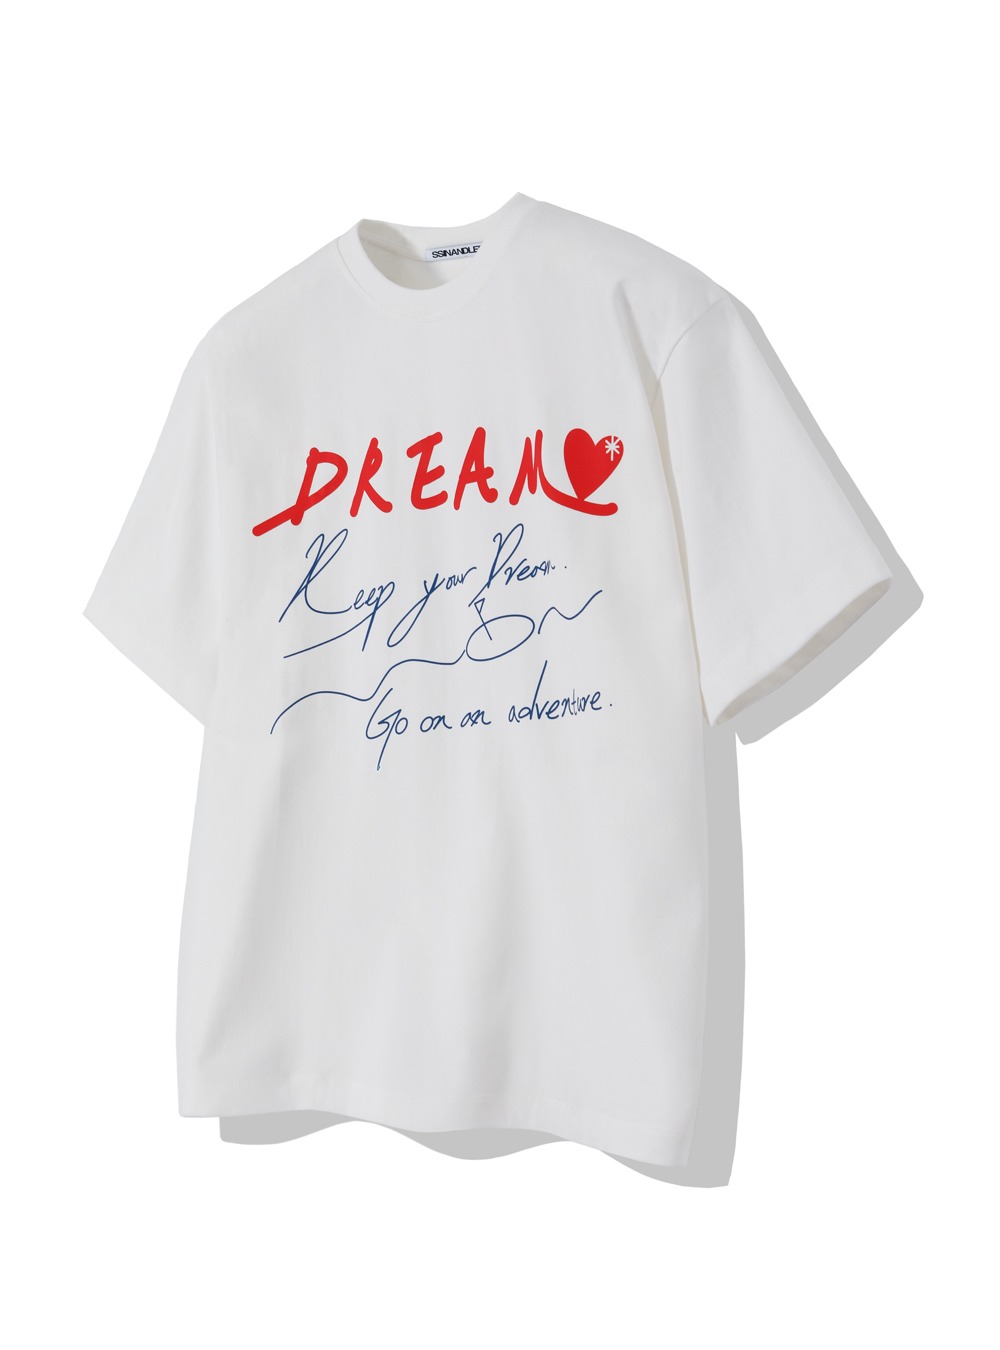 레드 드림 오버핏 티셔츠Red Dream Over fit t- shirt